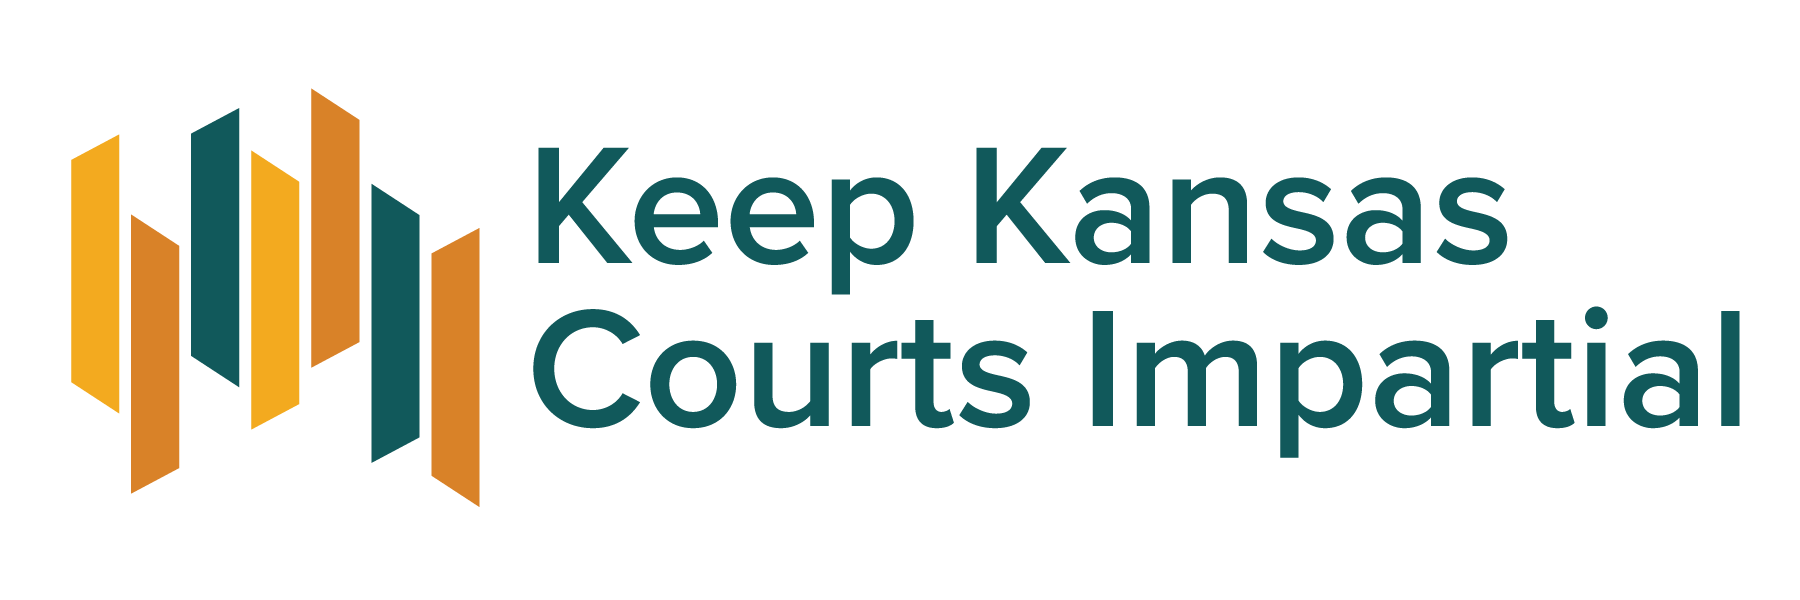 Keep Kansas Courts Impartial